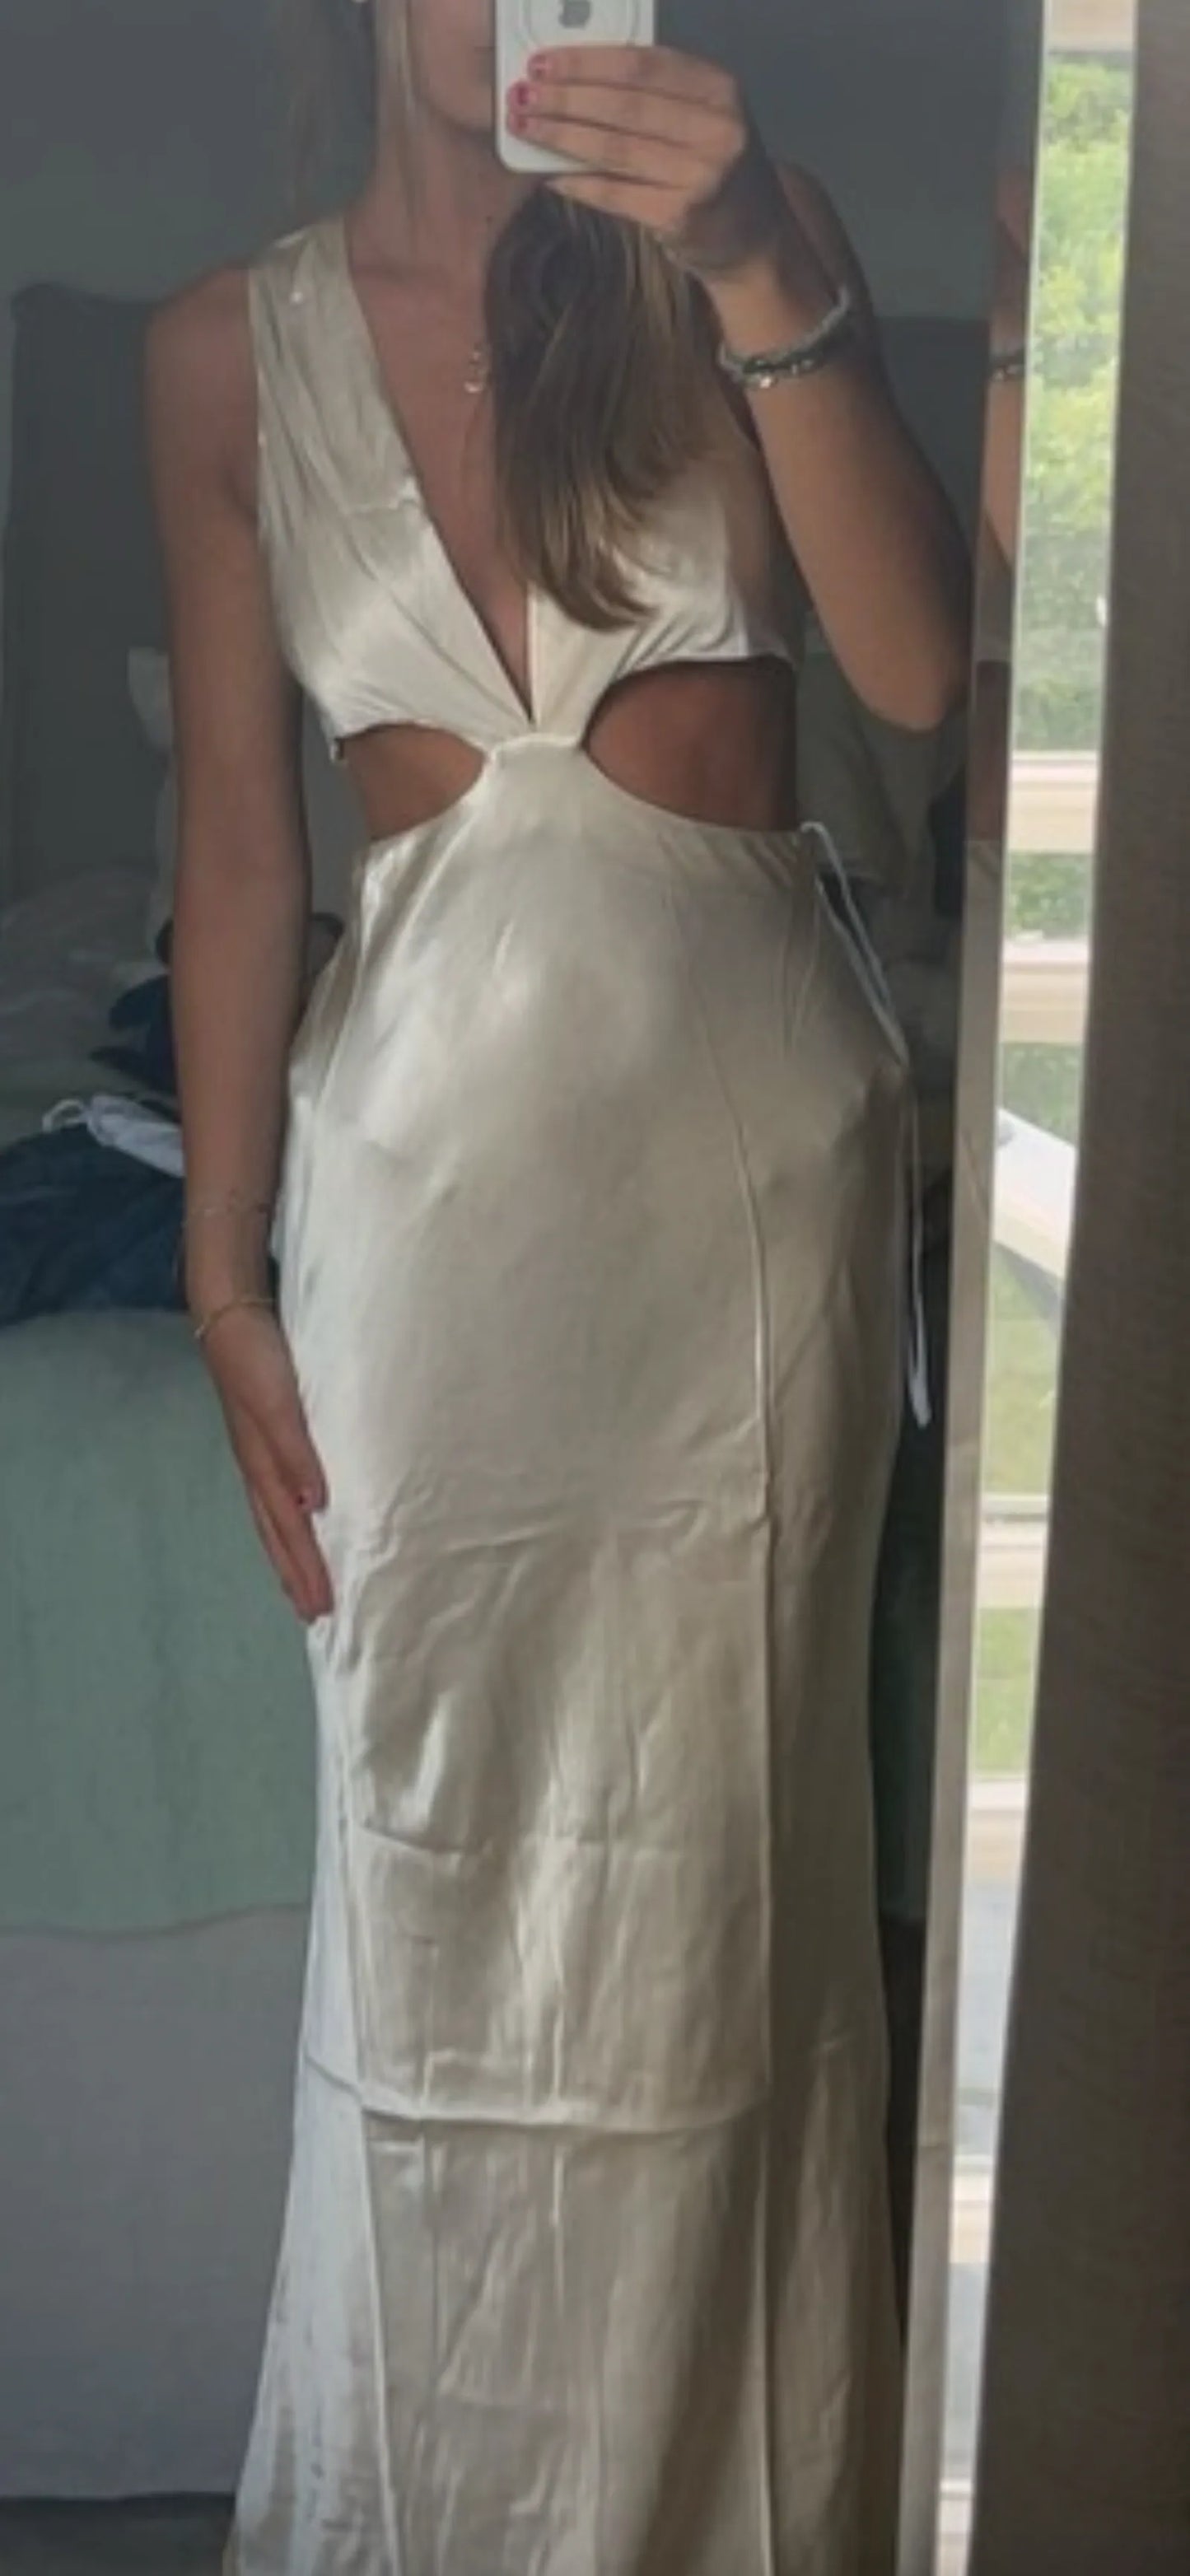 Shona Joy-sidenklänning NWT